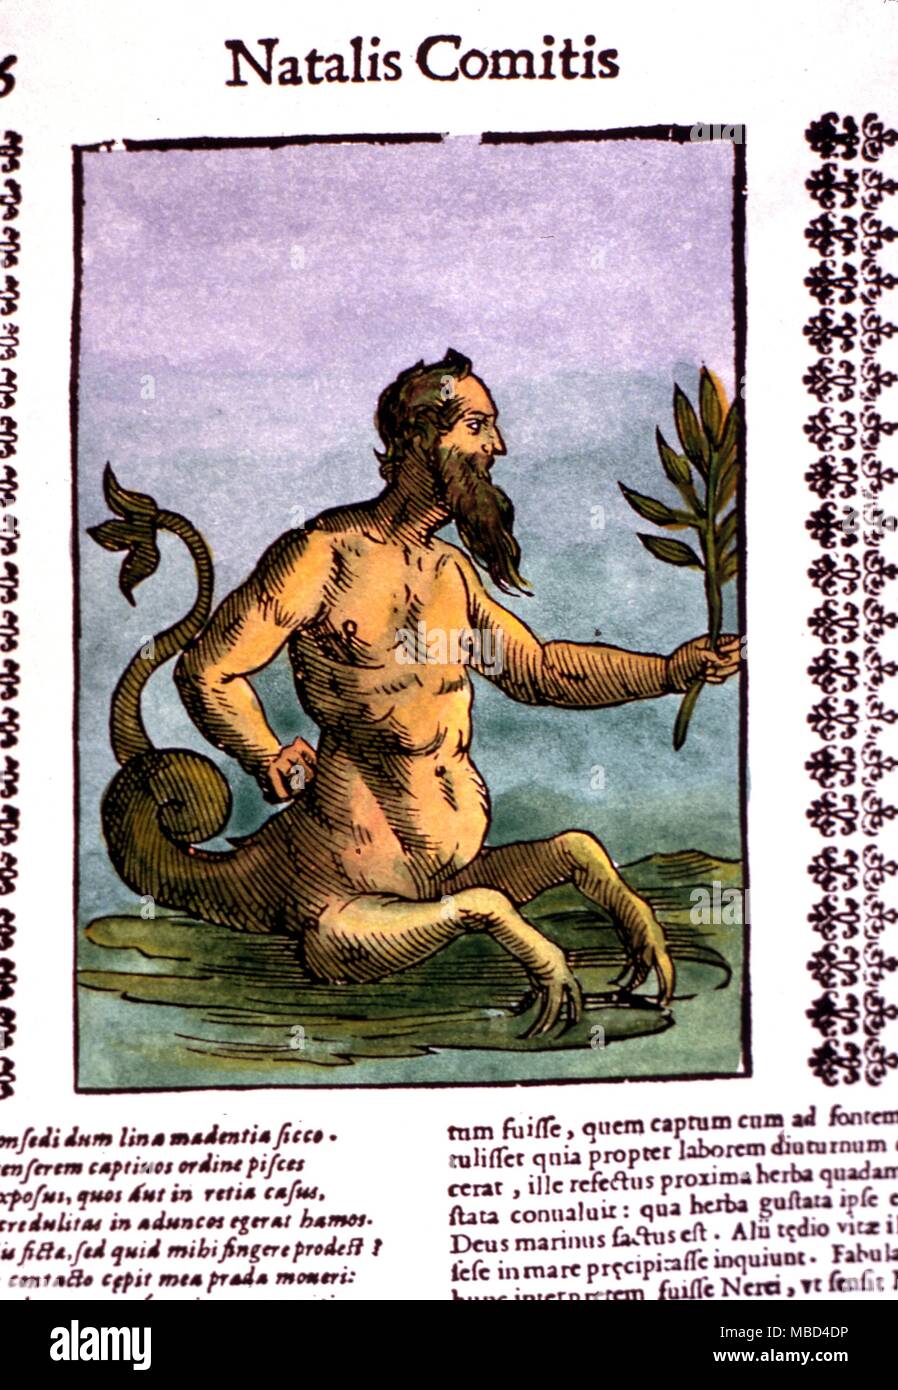 La mythologie grecque - Glaucos. Le serpent queue de cheval Glaucos. De Comitis' 'ythologiae' c.1640. Banque D'Images